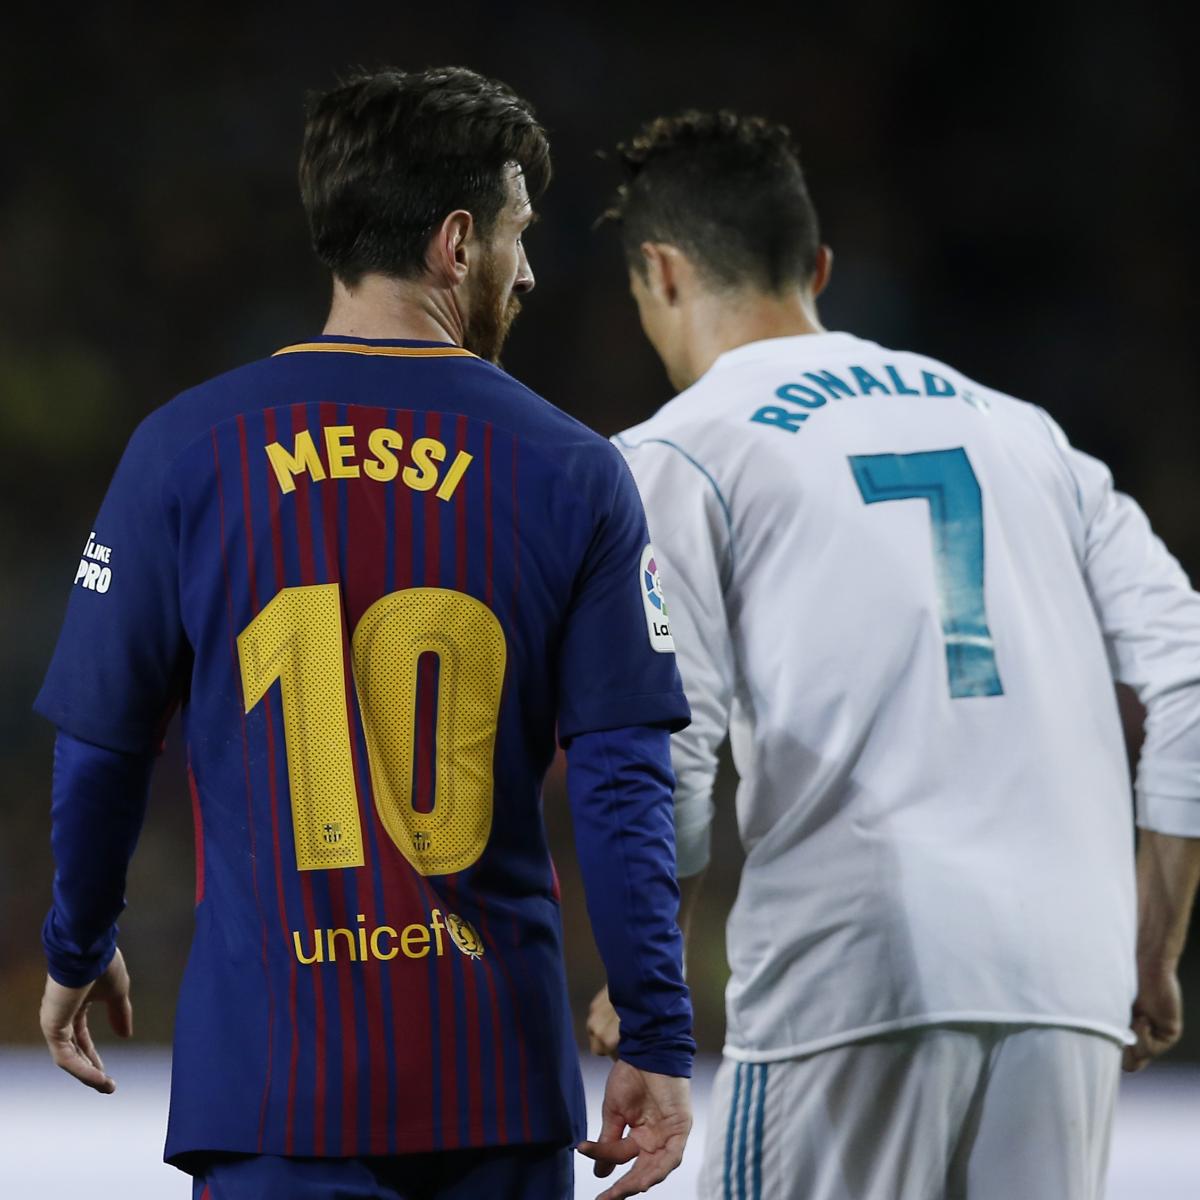 B/R Football on X: This time tomorrow: Messi vs. Ronaldo 🤩   / X